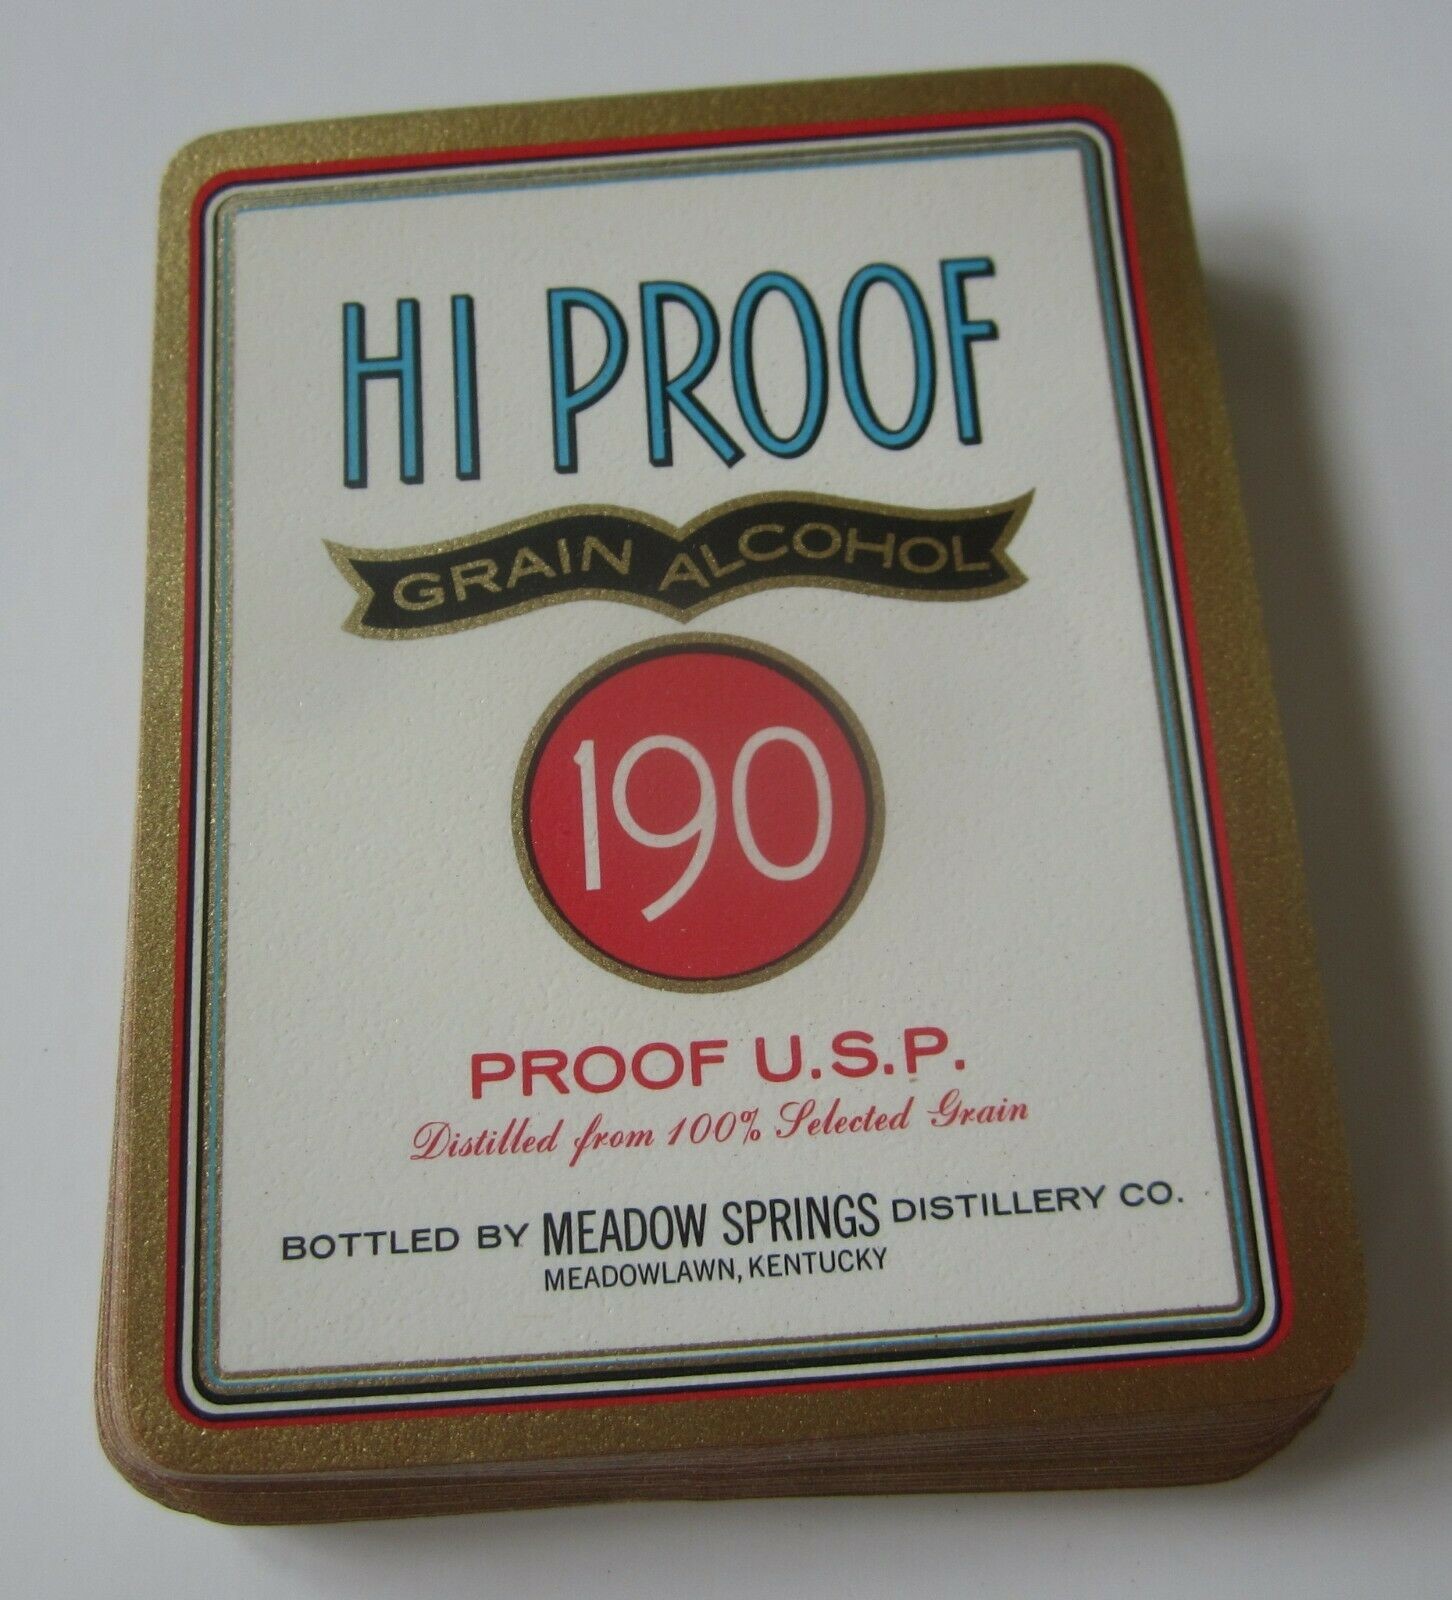  Lot of 50 Old Vintage - HI PROOF Grain Alcohol...